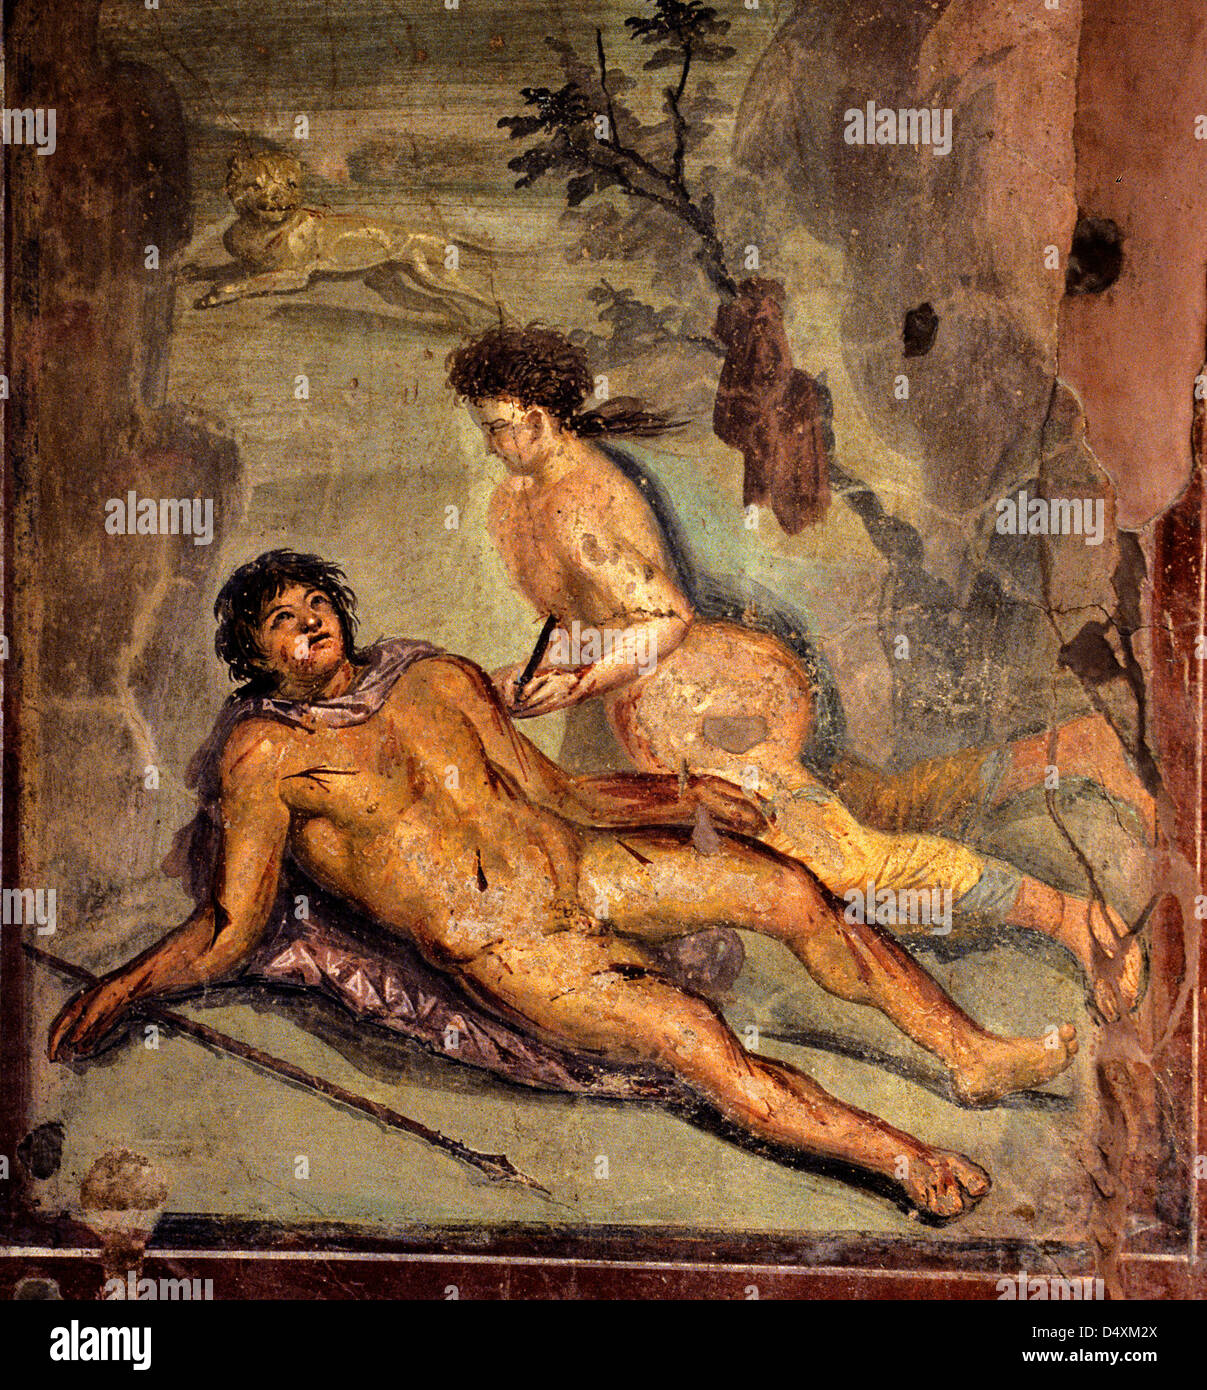 Maison Nargissus Sexe Porno Quartio fresque de Pompéi Photo Stock